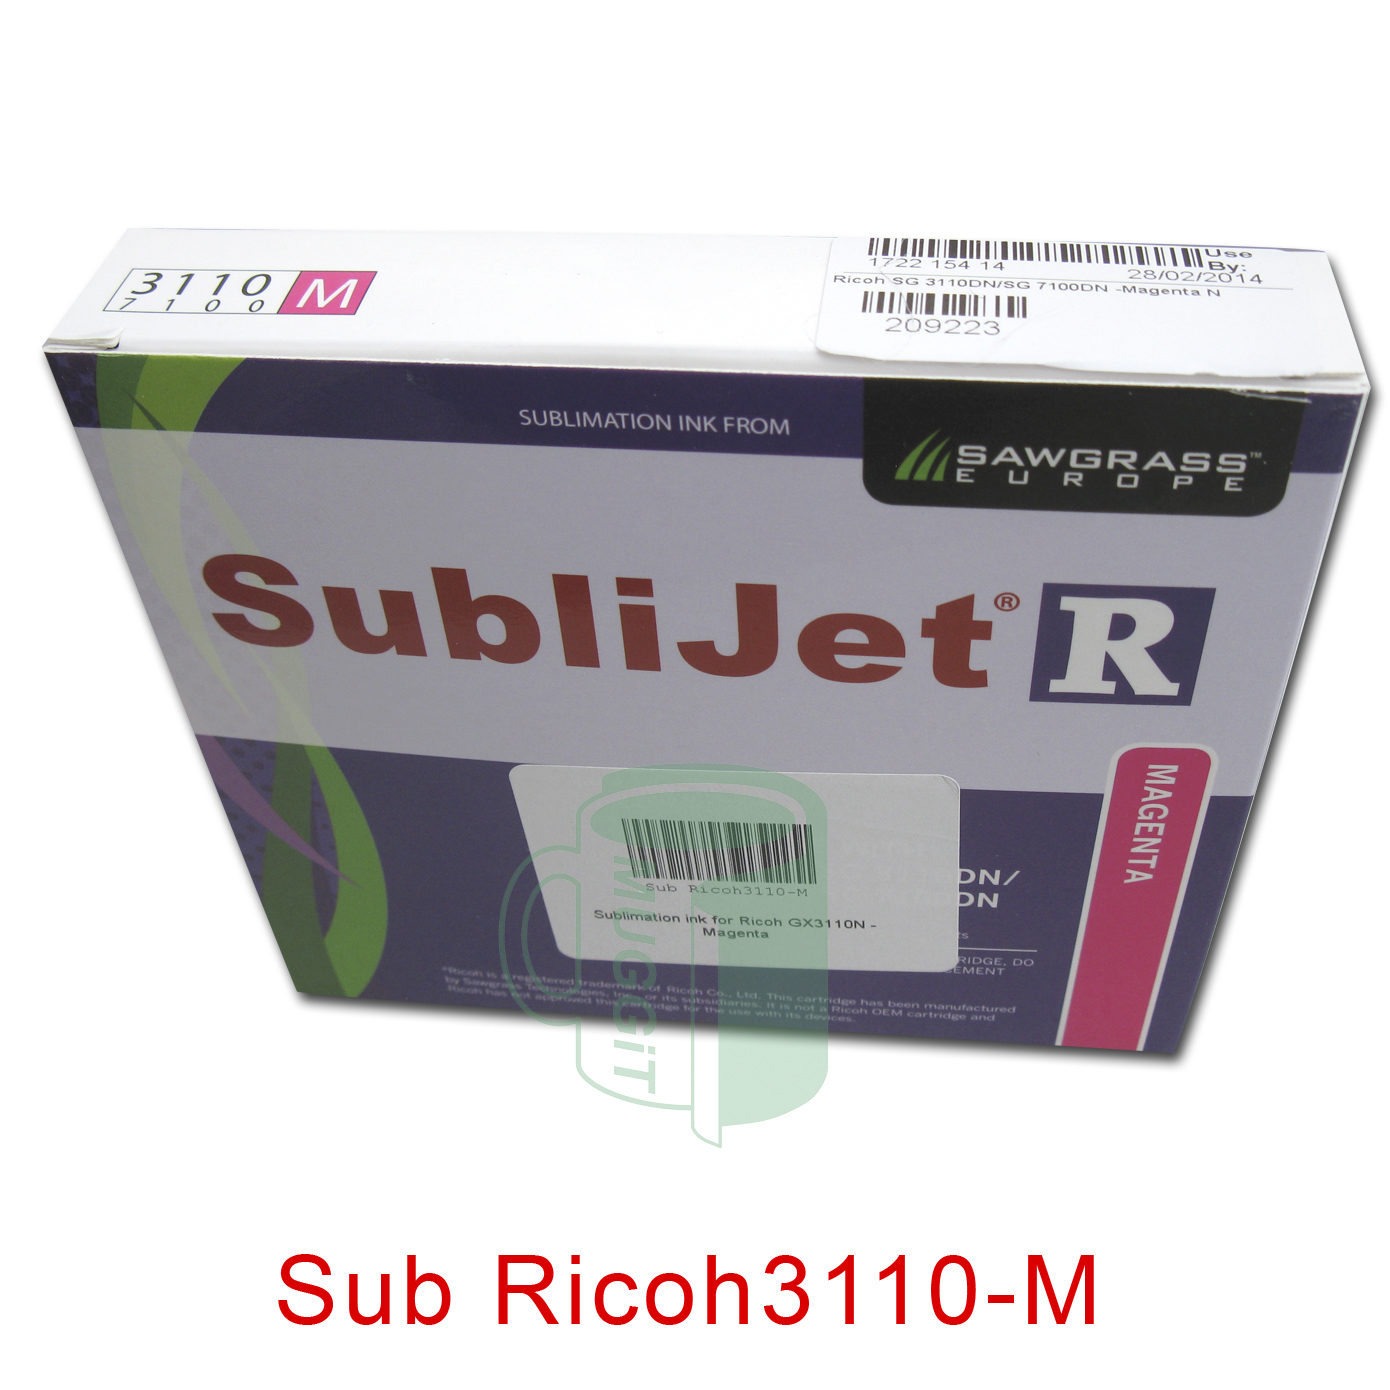 Sub Ricoh3110-M